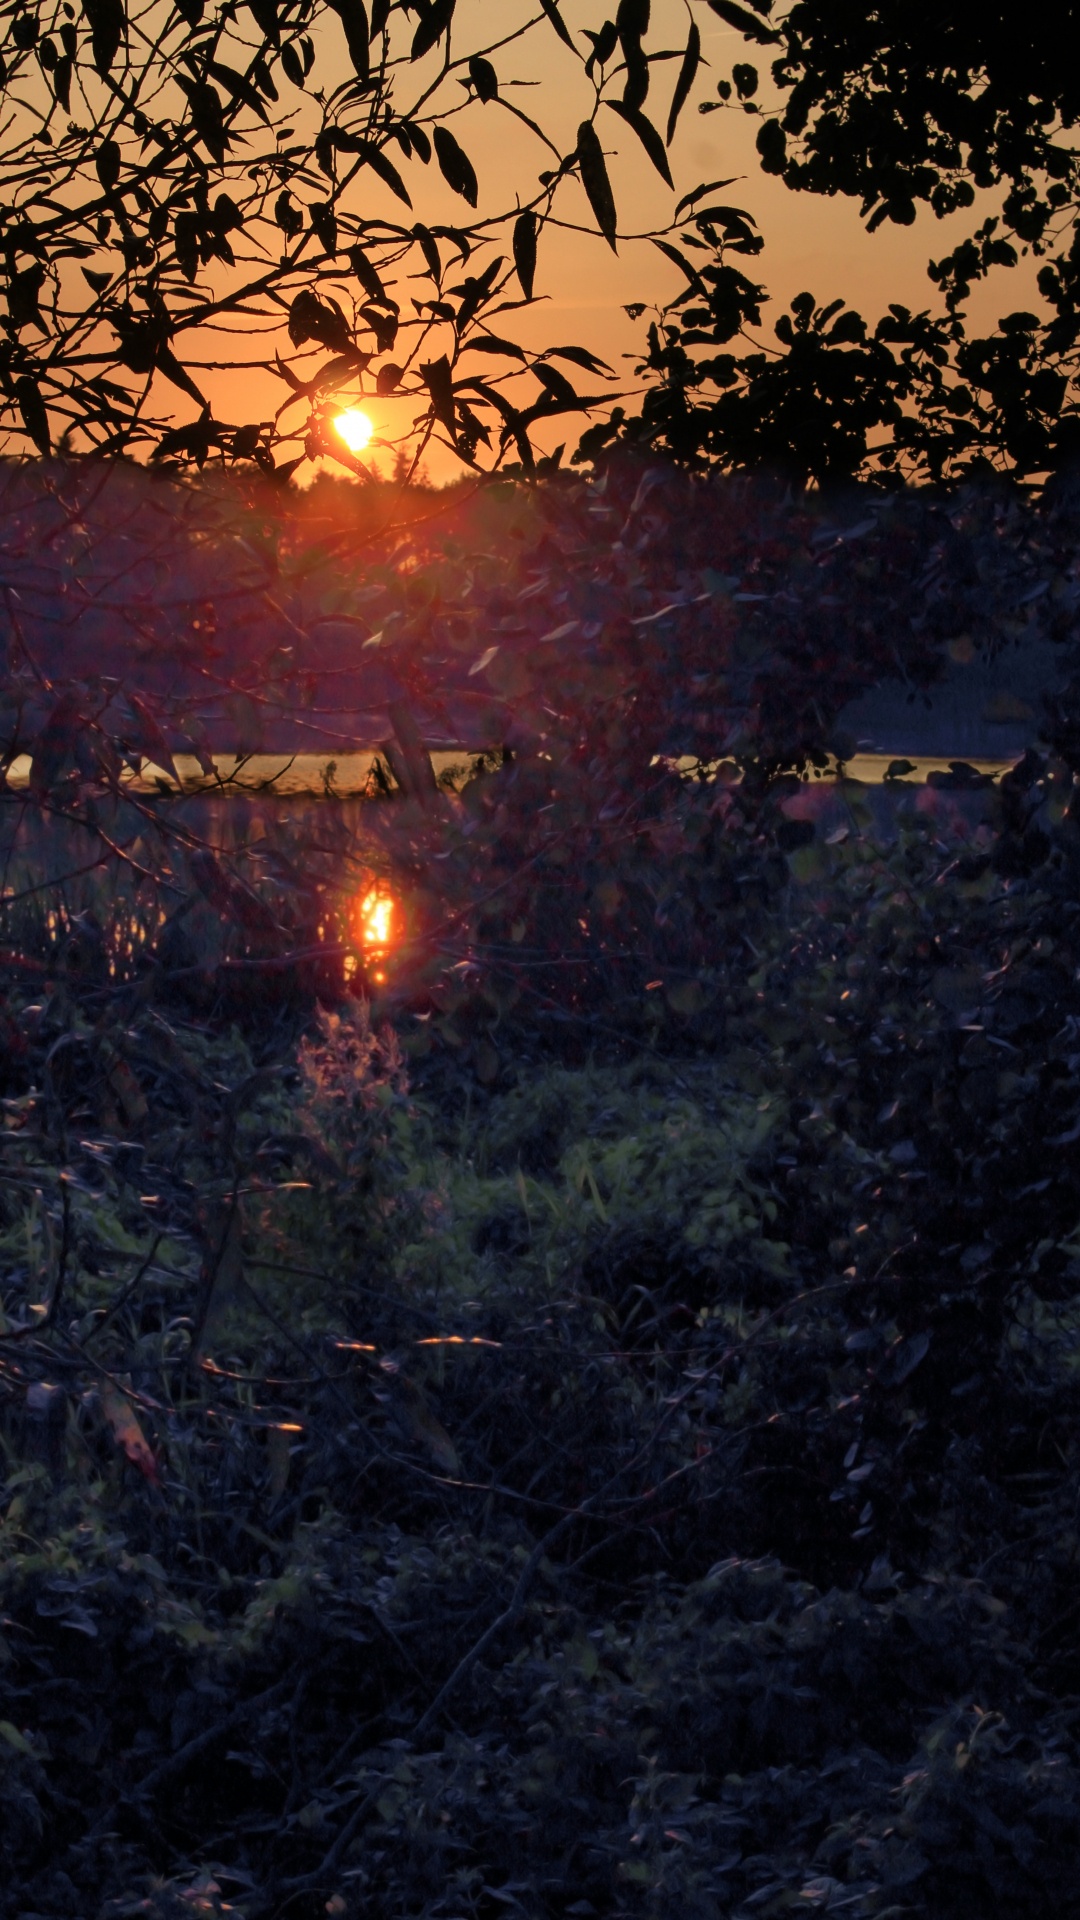 Natur, Sonnenuntergang, Wasser, Baum, Licht. Wallpaper in 1080x1920 Resolution